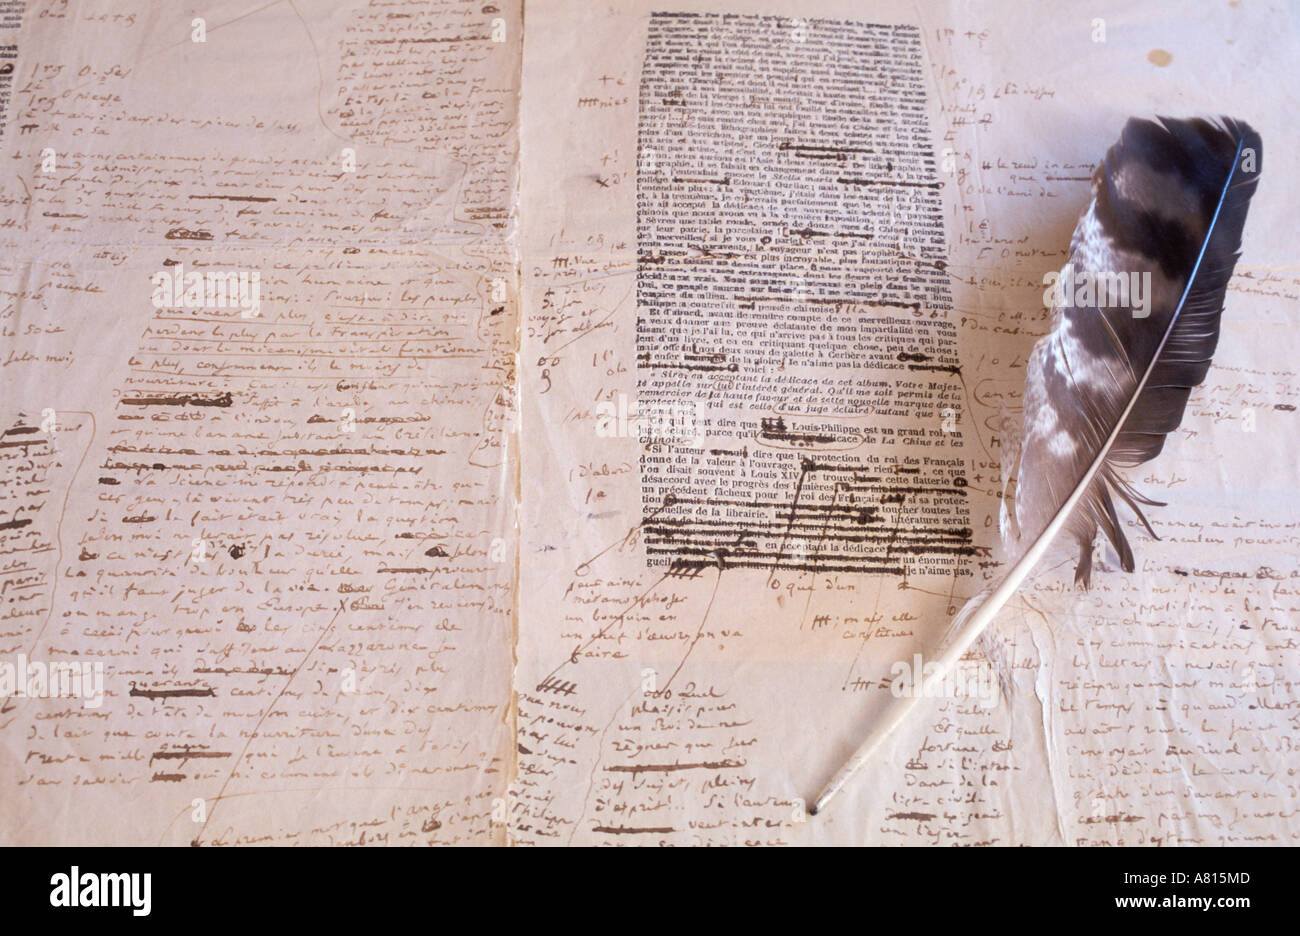 Frankreich, Indre et Loire, Touraine Balzacs, handschriftliches Manuskript von Balzac in Sache korrigiert Stockfoto